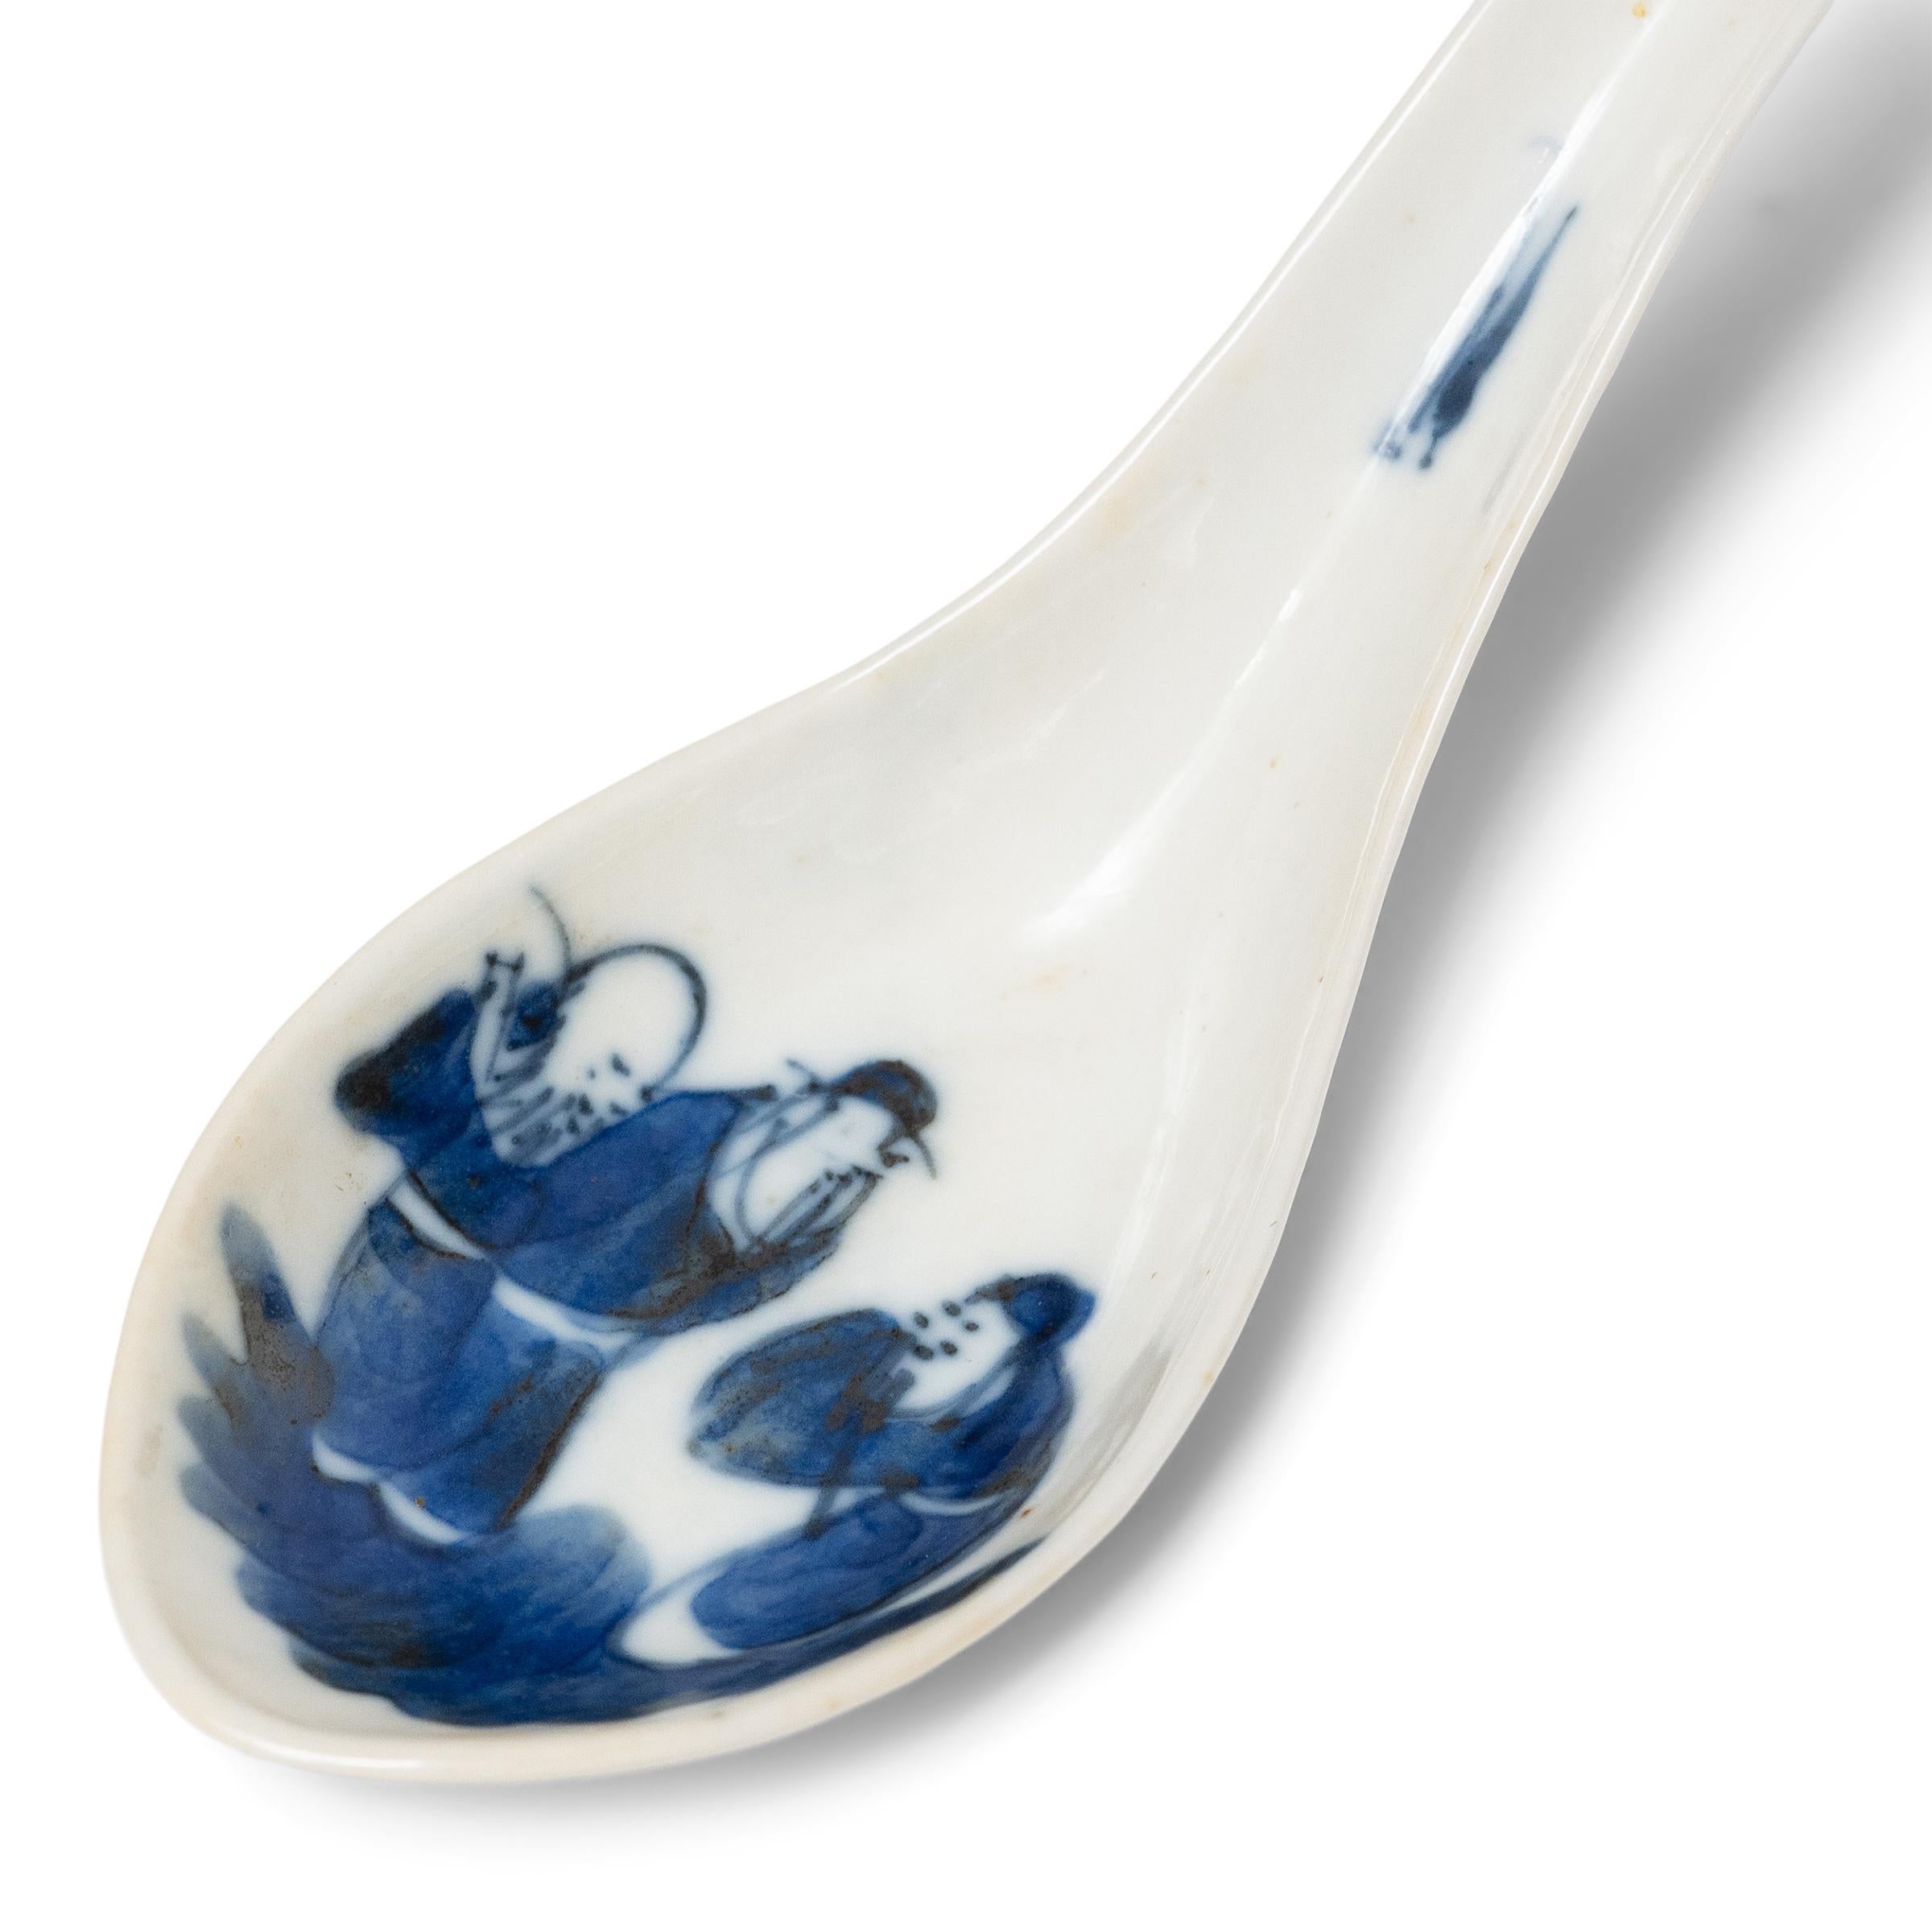 Exemple délicat de la pratique ancestrale de la céramique bleu et blanc, cette cuillère à soupe en porcelaine du XIXe siècle était probablement utilisée comme ustensile de table quotidien. Utilisées en Chine dès la dynastie Shang (1600 - 1046